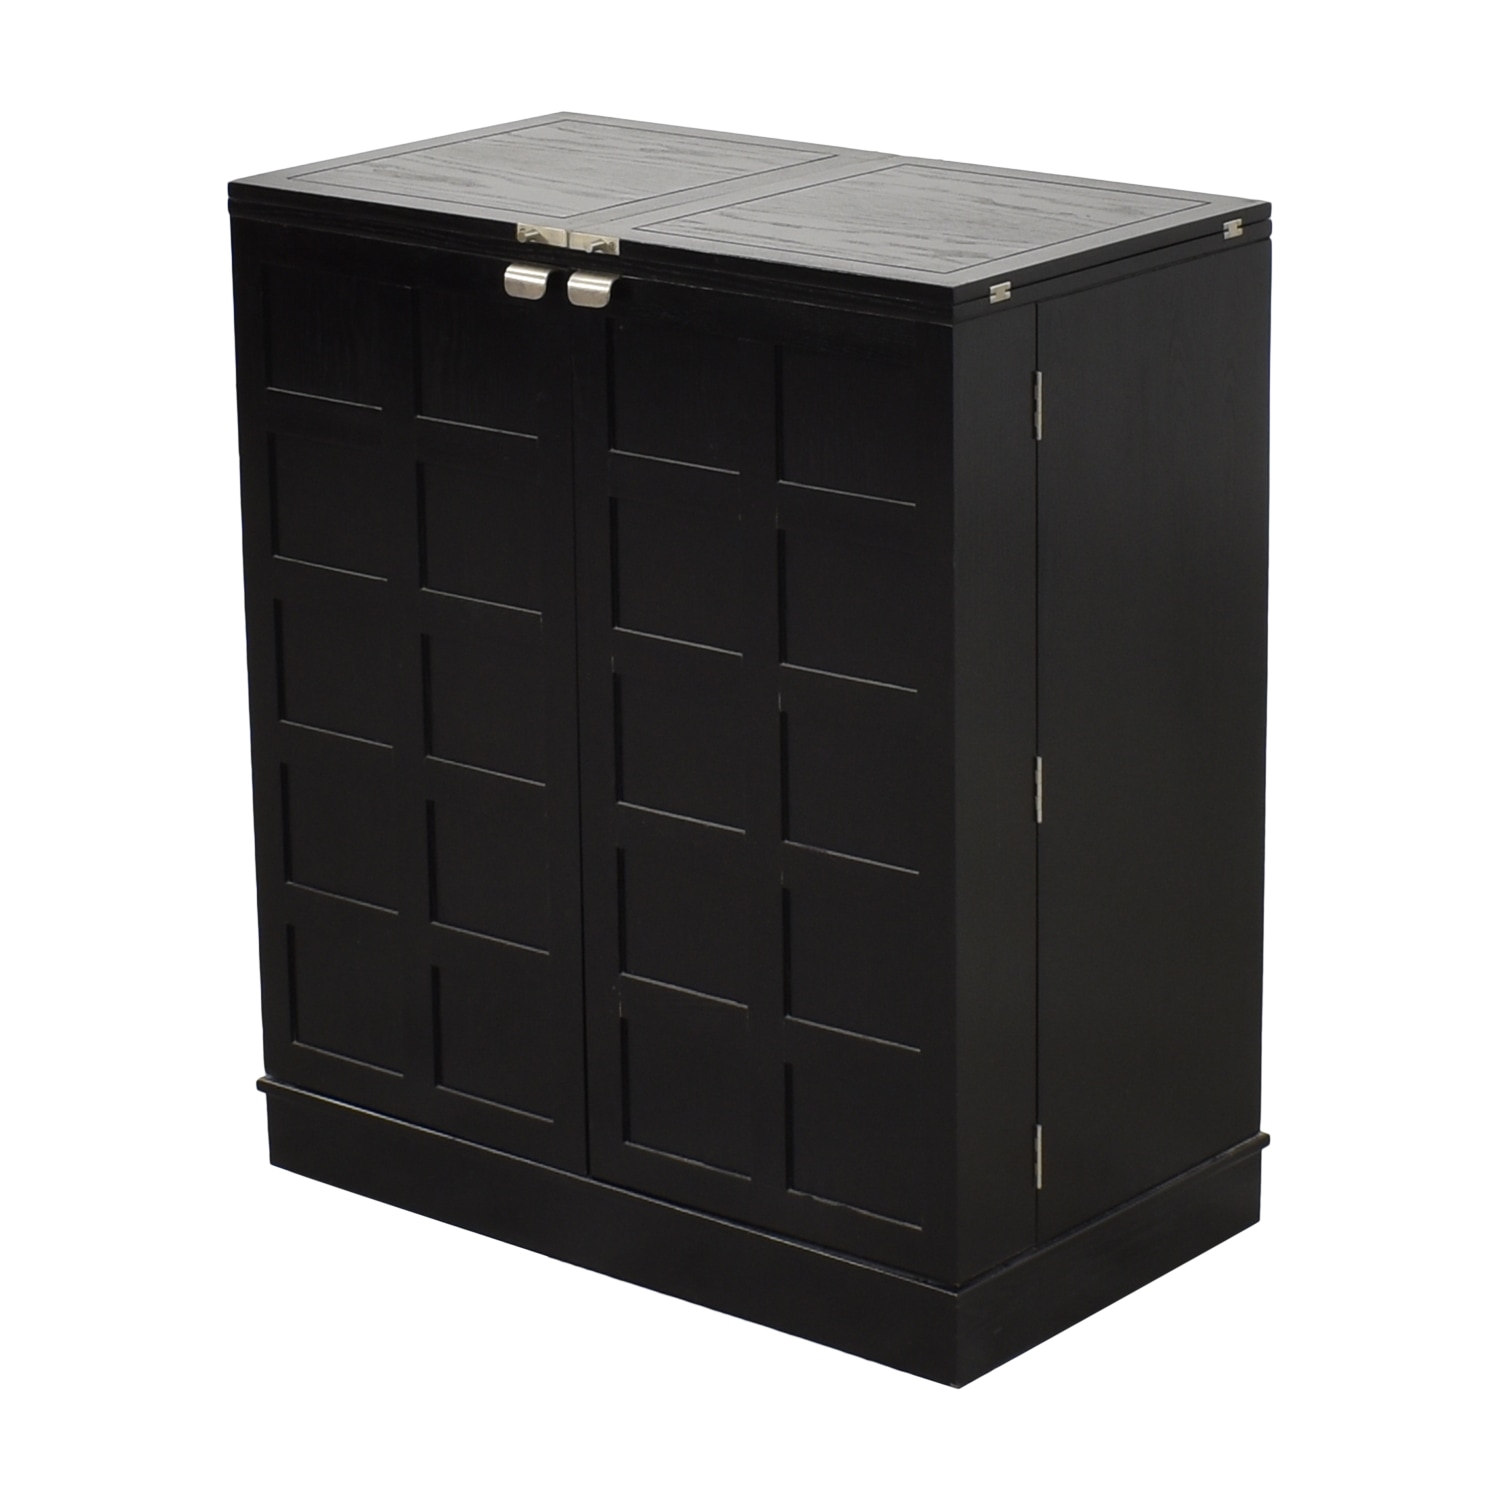 Crate & Barrel Crate & Barrel Steamer Bar Cabinet Cabinets & Sideboards